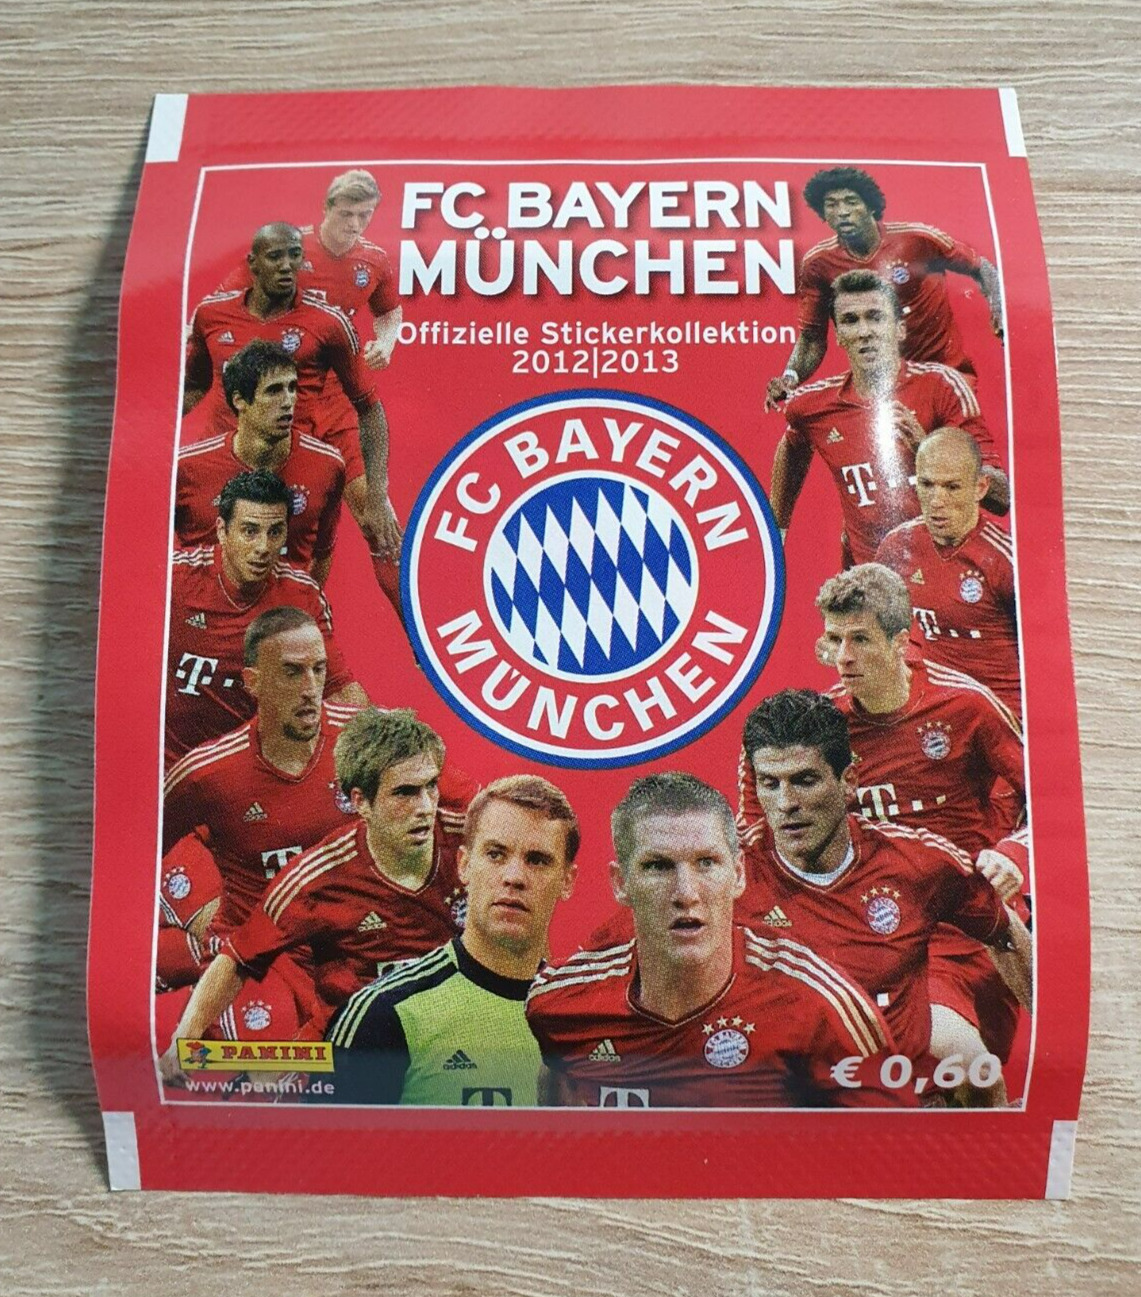 Panini 1 bag FC Bayern Munich 2012 2013 Bustina pocket pack pack sticker